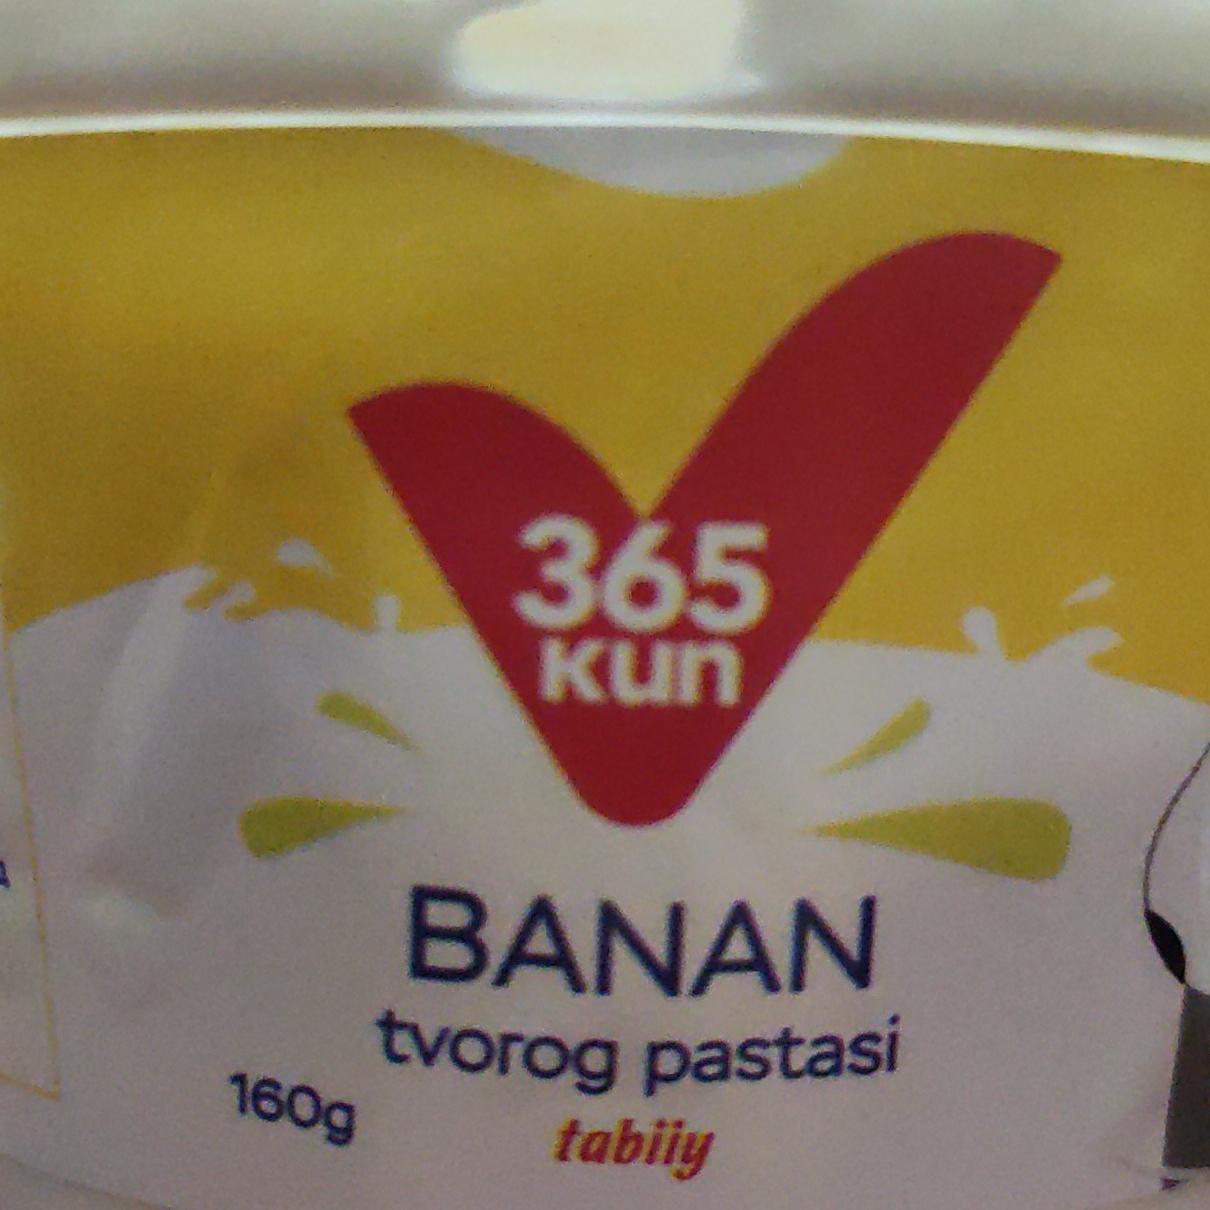 Фото - Творожная паста банановая 365 kun